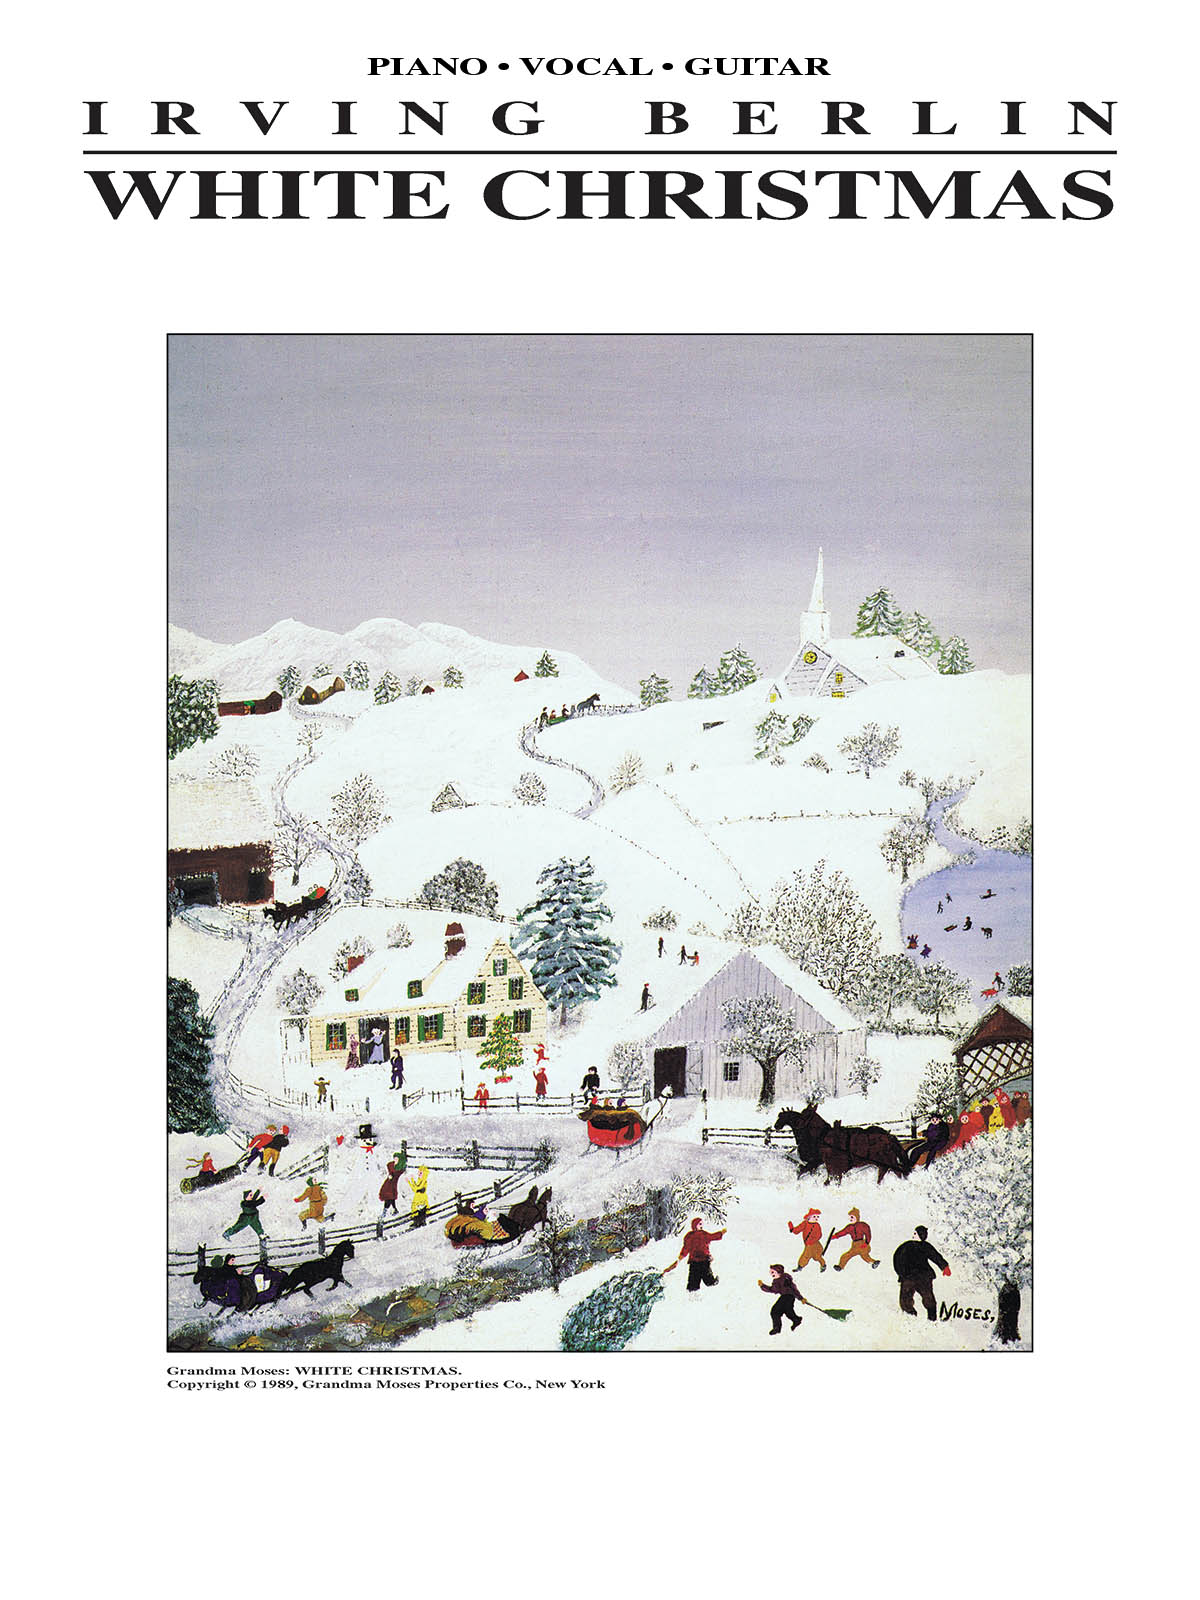 White Christmas - Piano/Vocal/Guitar - noty pro zpěv, klavír s akordy pro kytaru